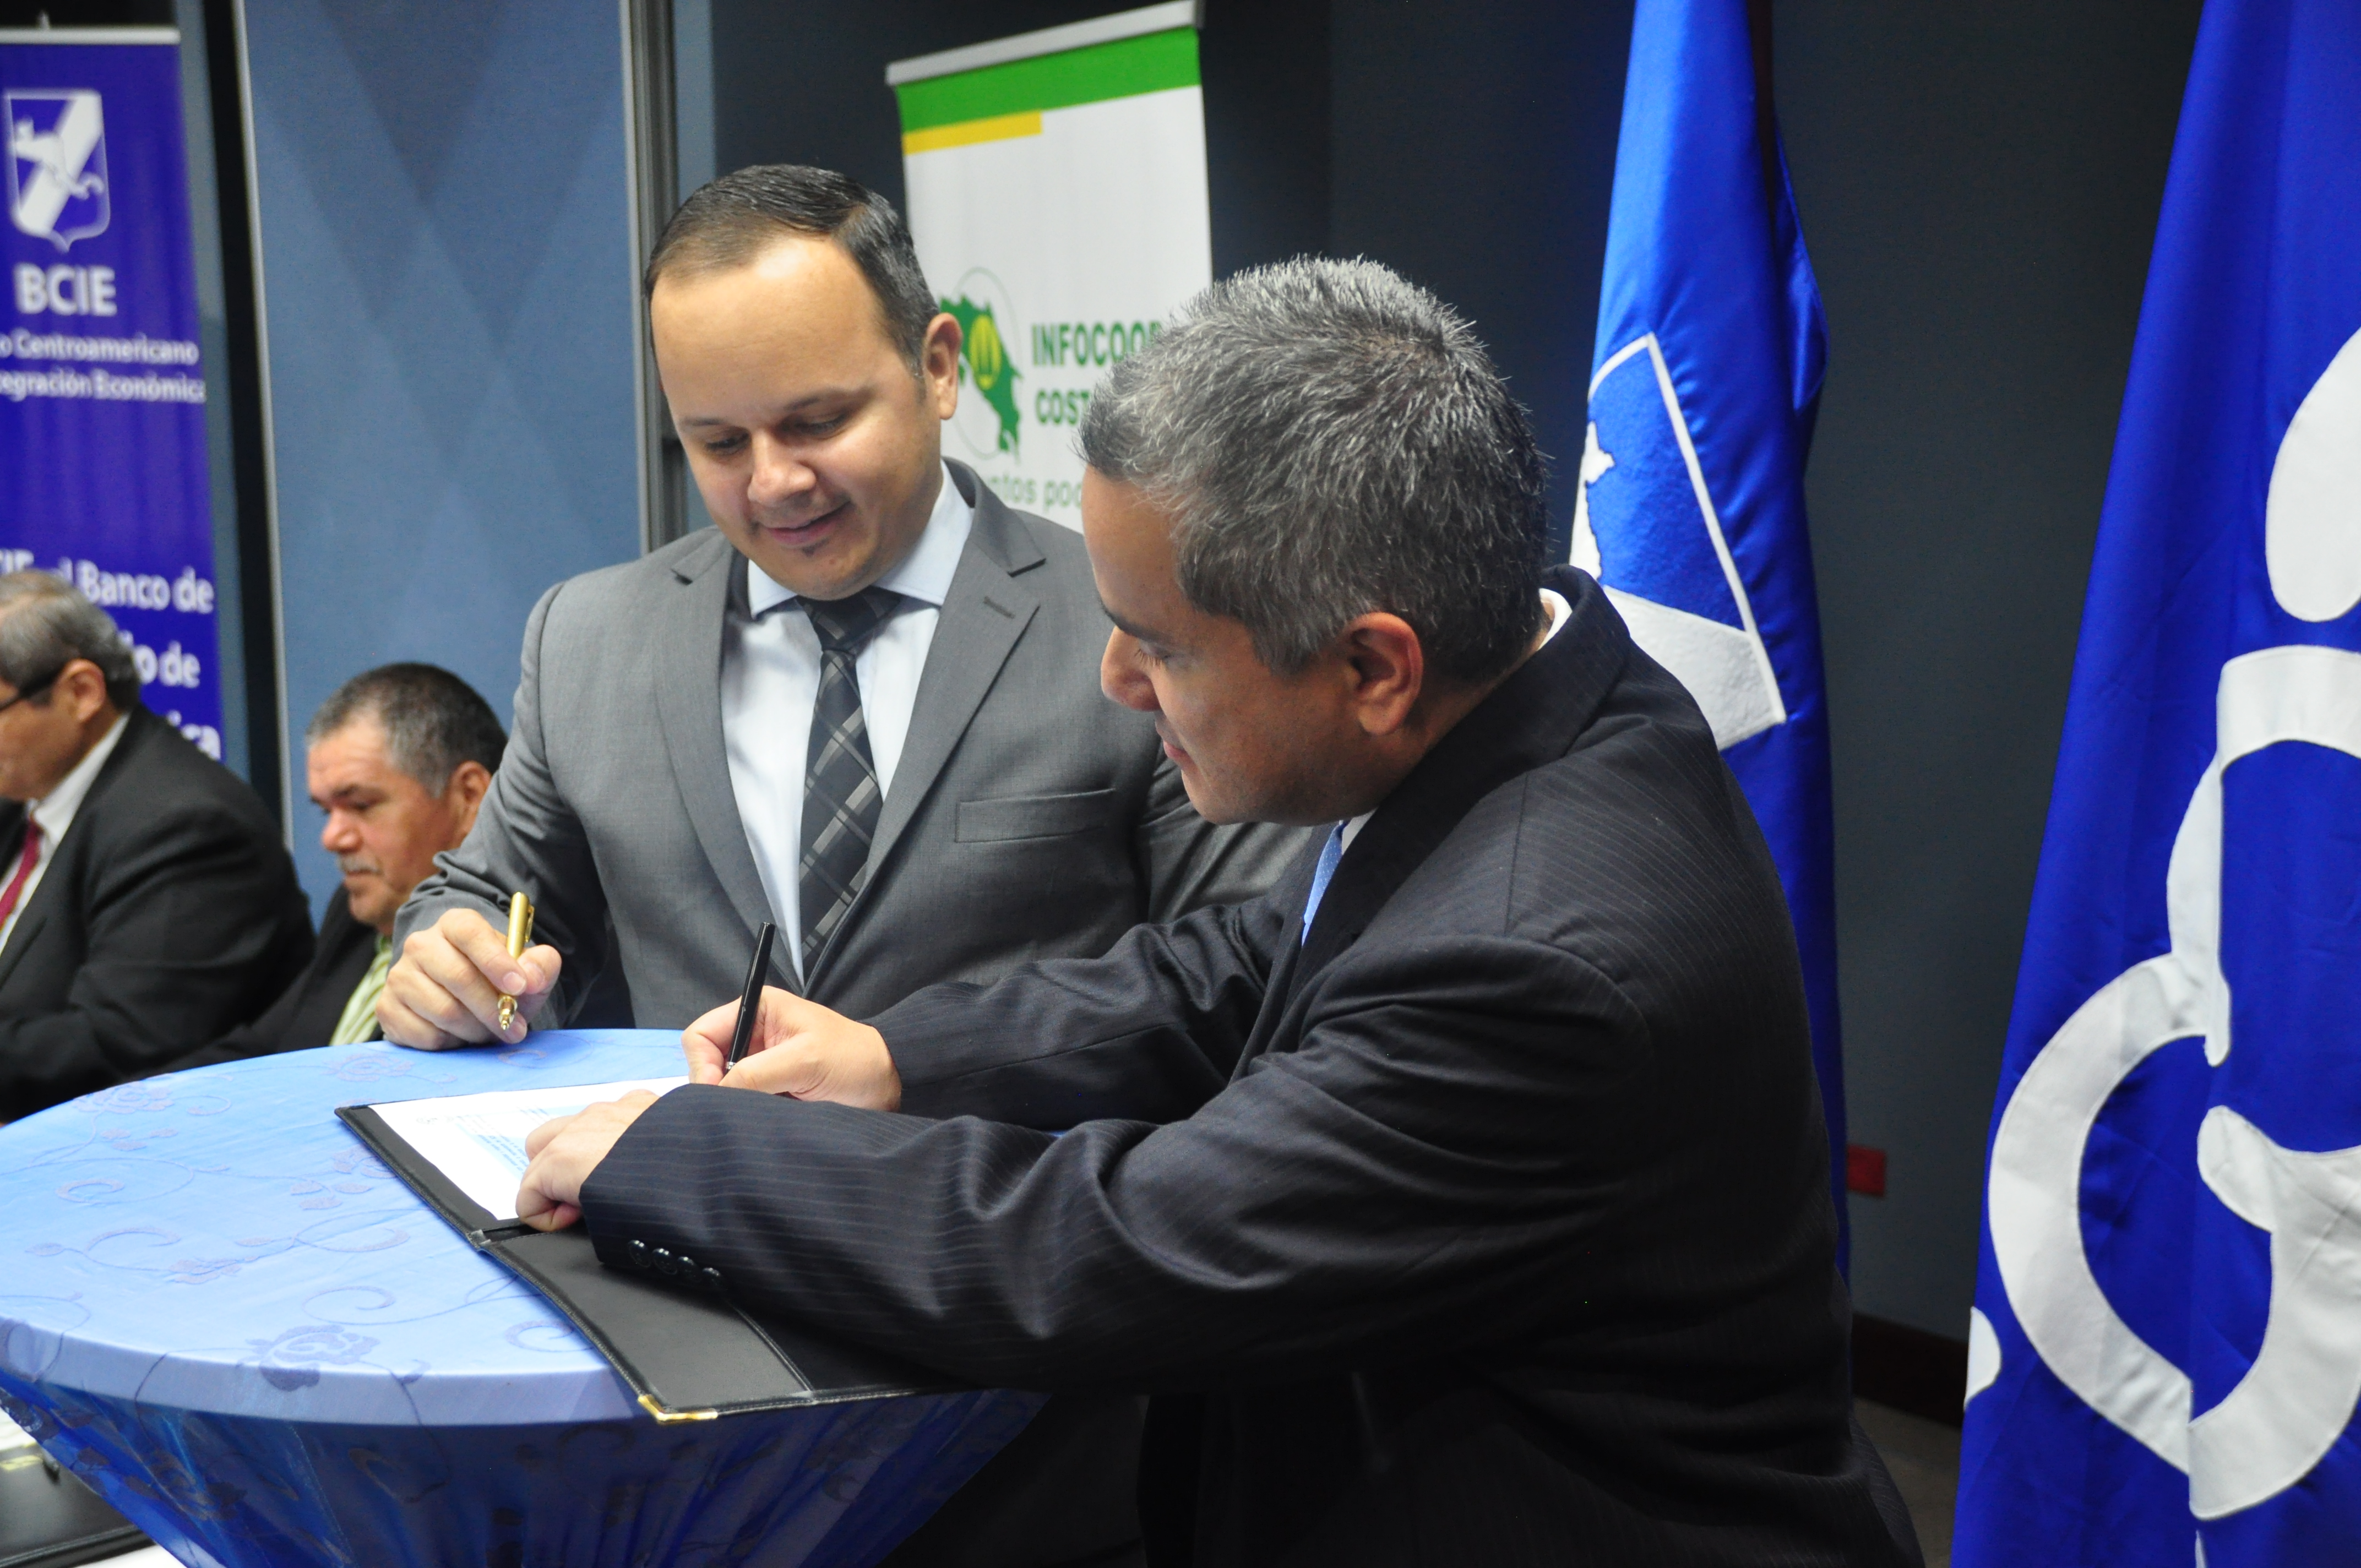 BCIE firma crédito por US$30 millones con Infocoop Costa Rica